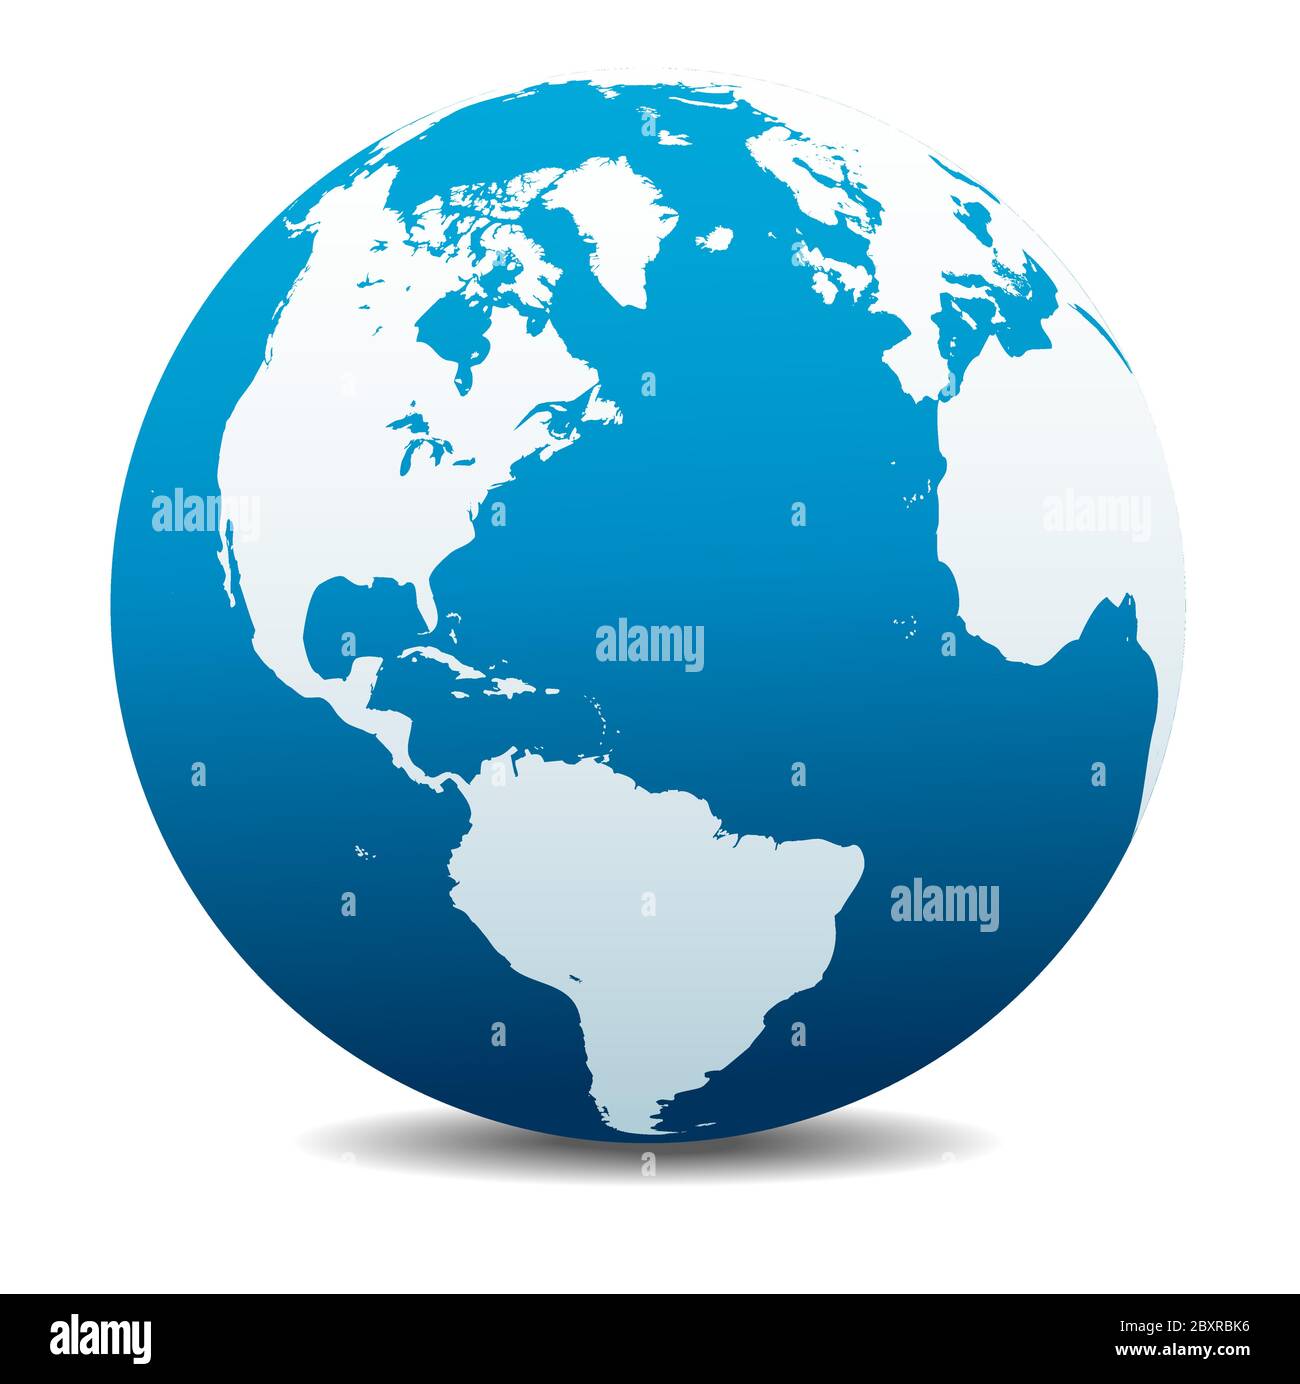 Amérique du Nord et du Sud, Europe, Afrique. Icône carte vectorielle du globe terrestre, Terre. Tous les éléments se trouvent sur des calques individuels dans le fichier vectoriel. Illustration de Vecteur